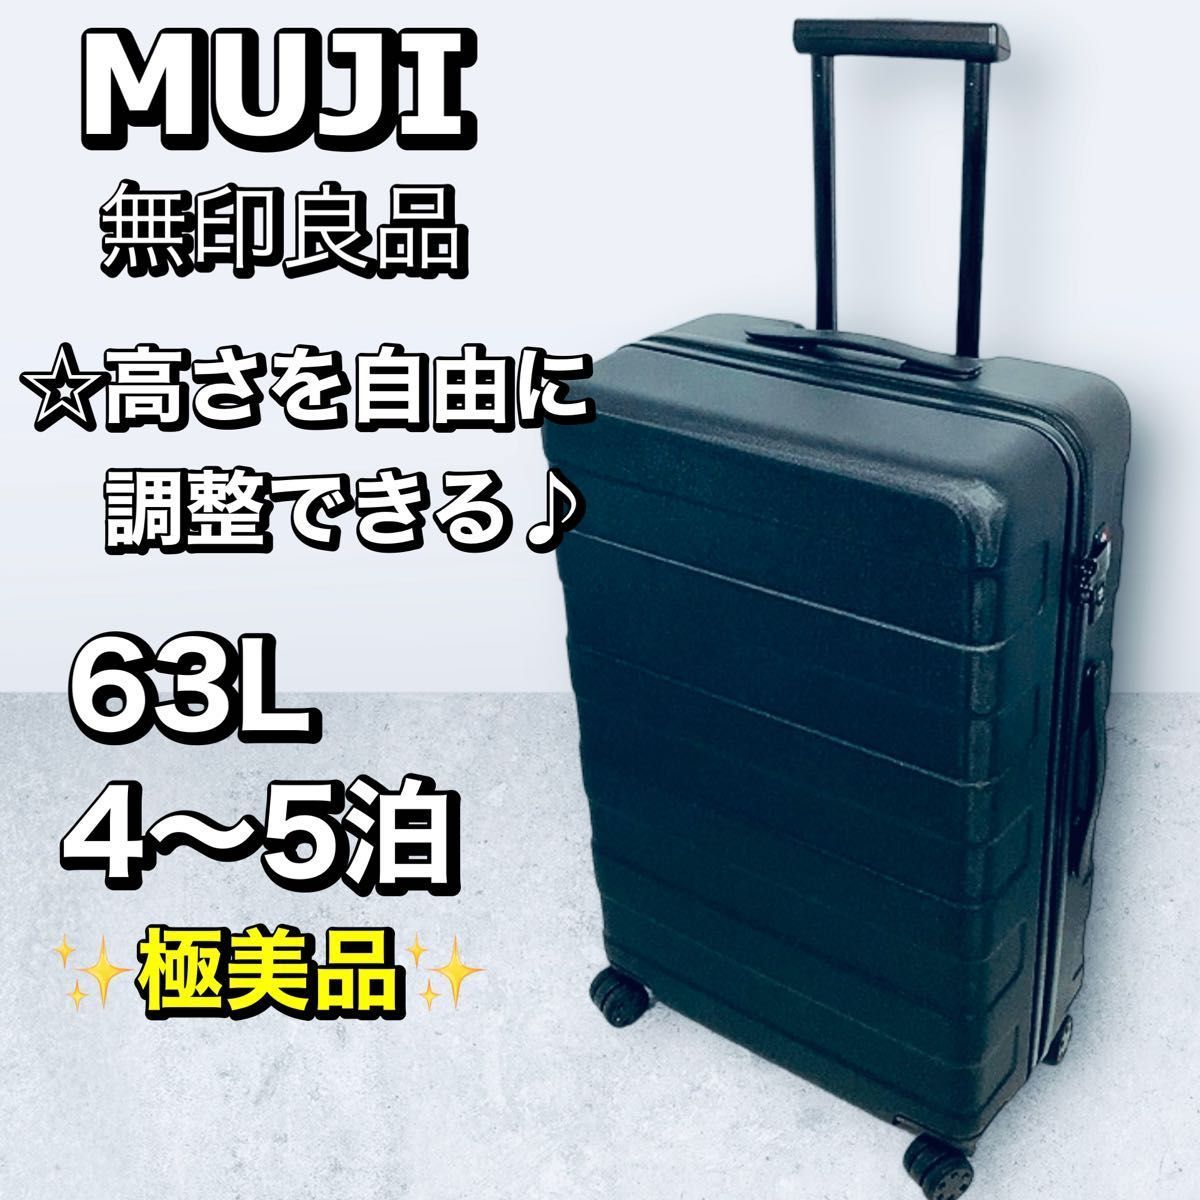 廃盤品 MUJI 無印良品 ハードキャリーケース 63L 4輪 ブラック 極美品-